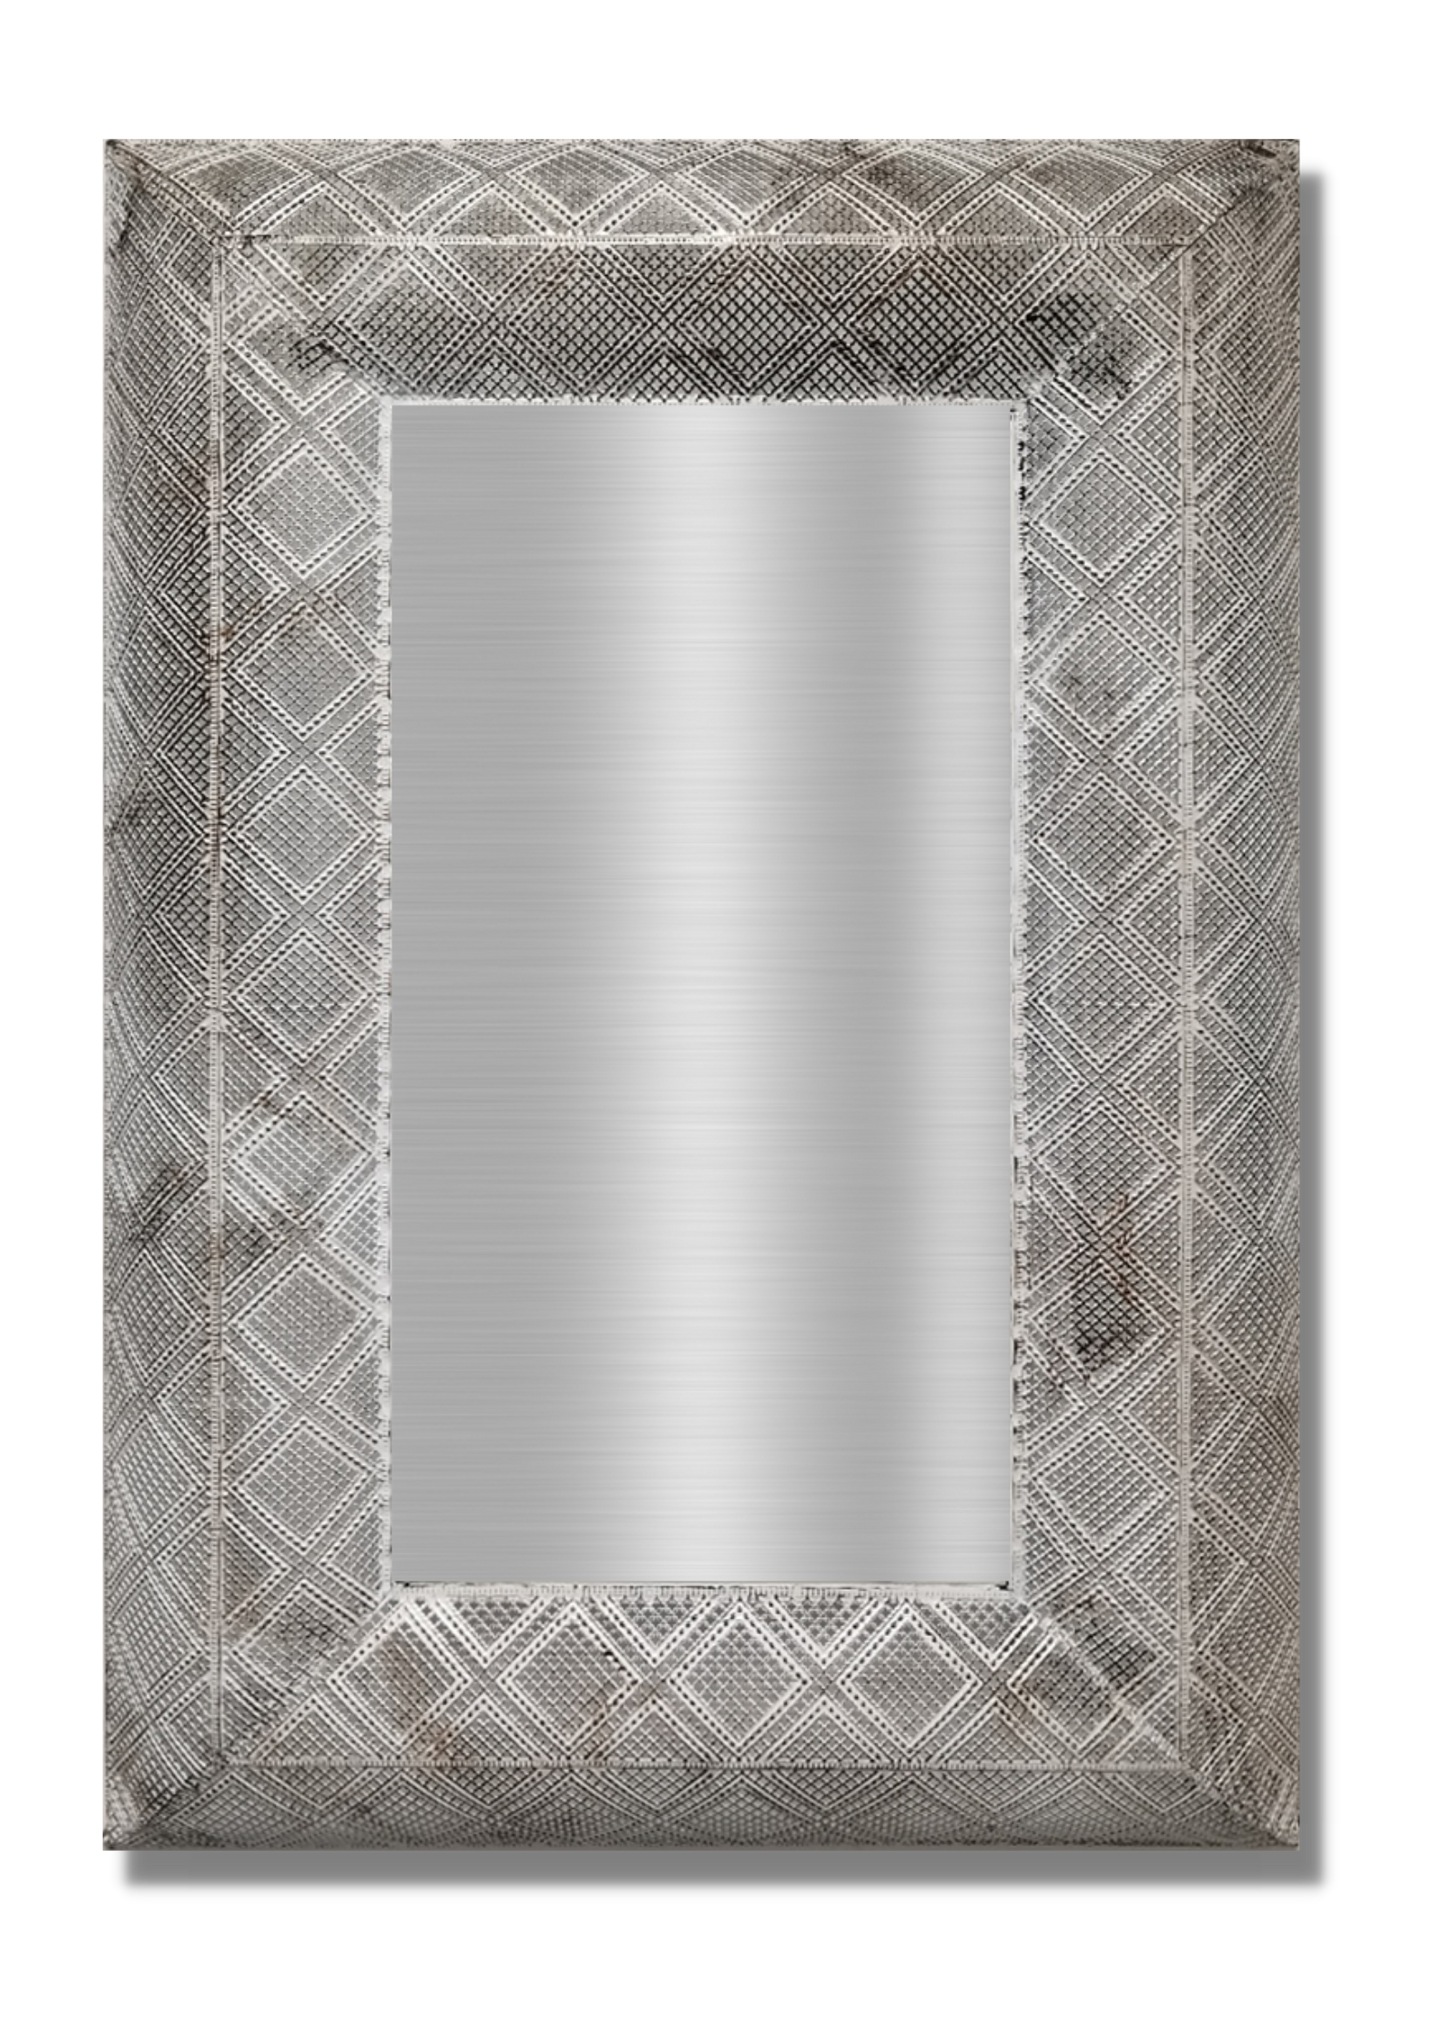 Carton of 2 x Diamond Bronze Mirrors @ R275 per Mirror